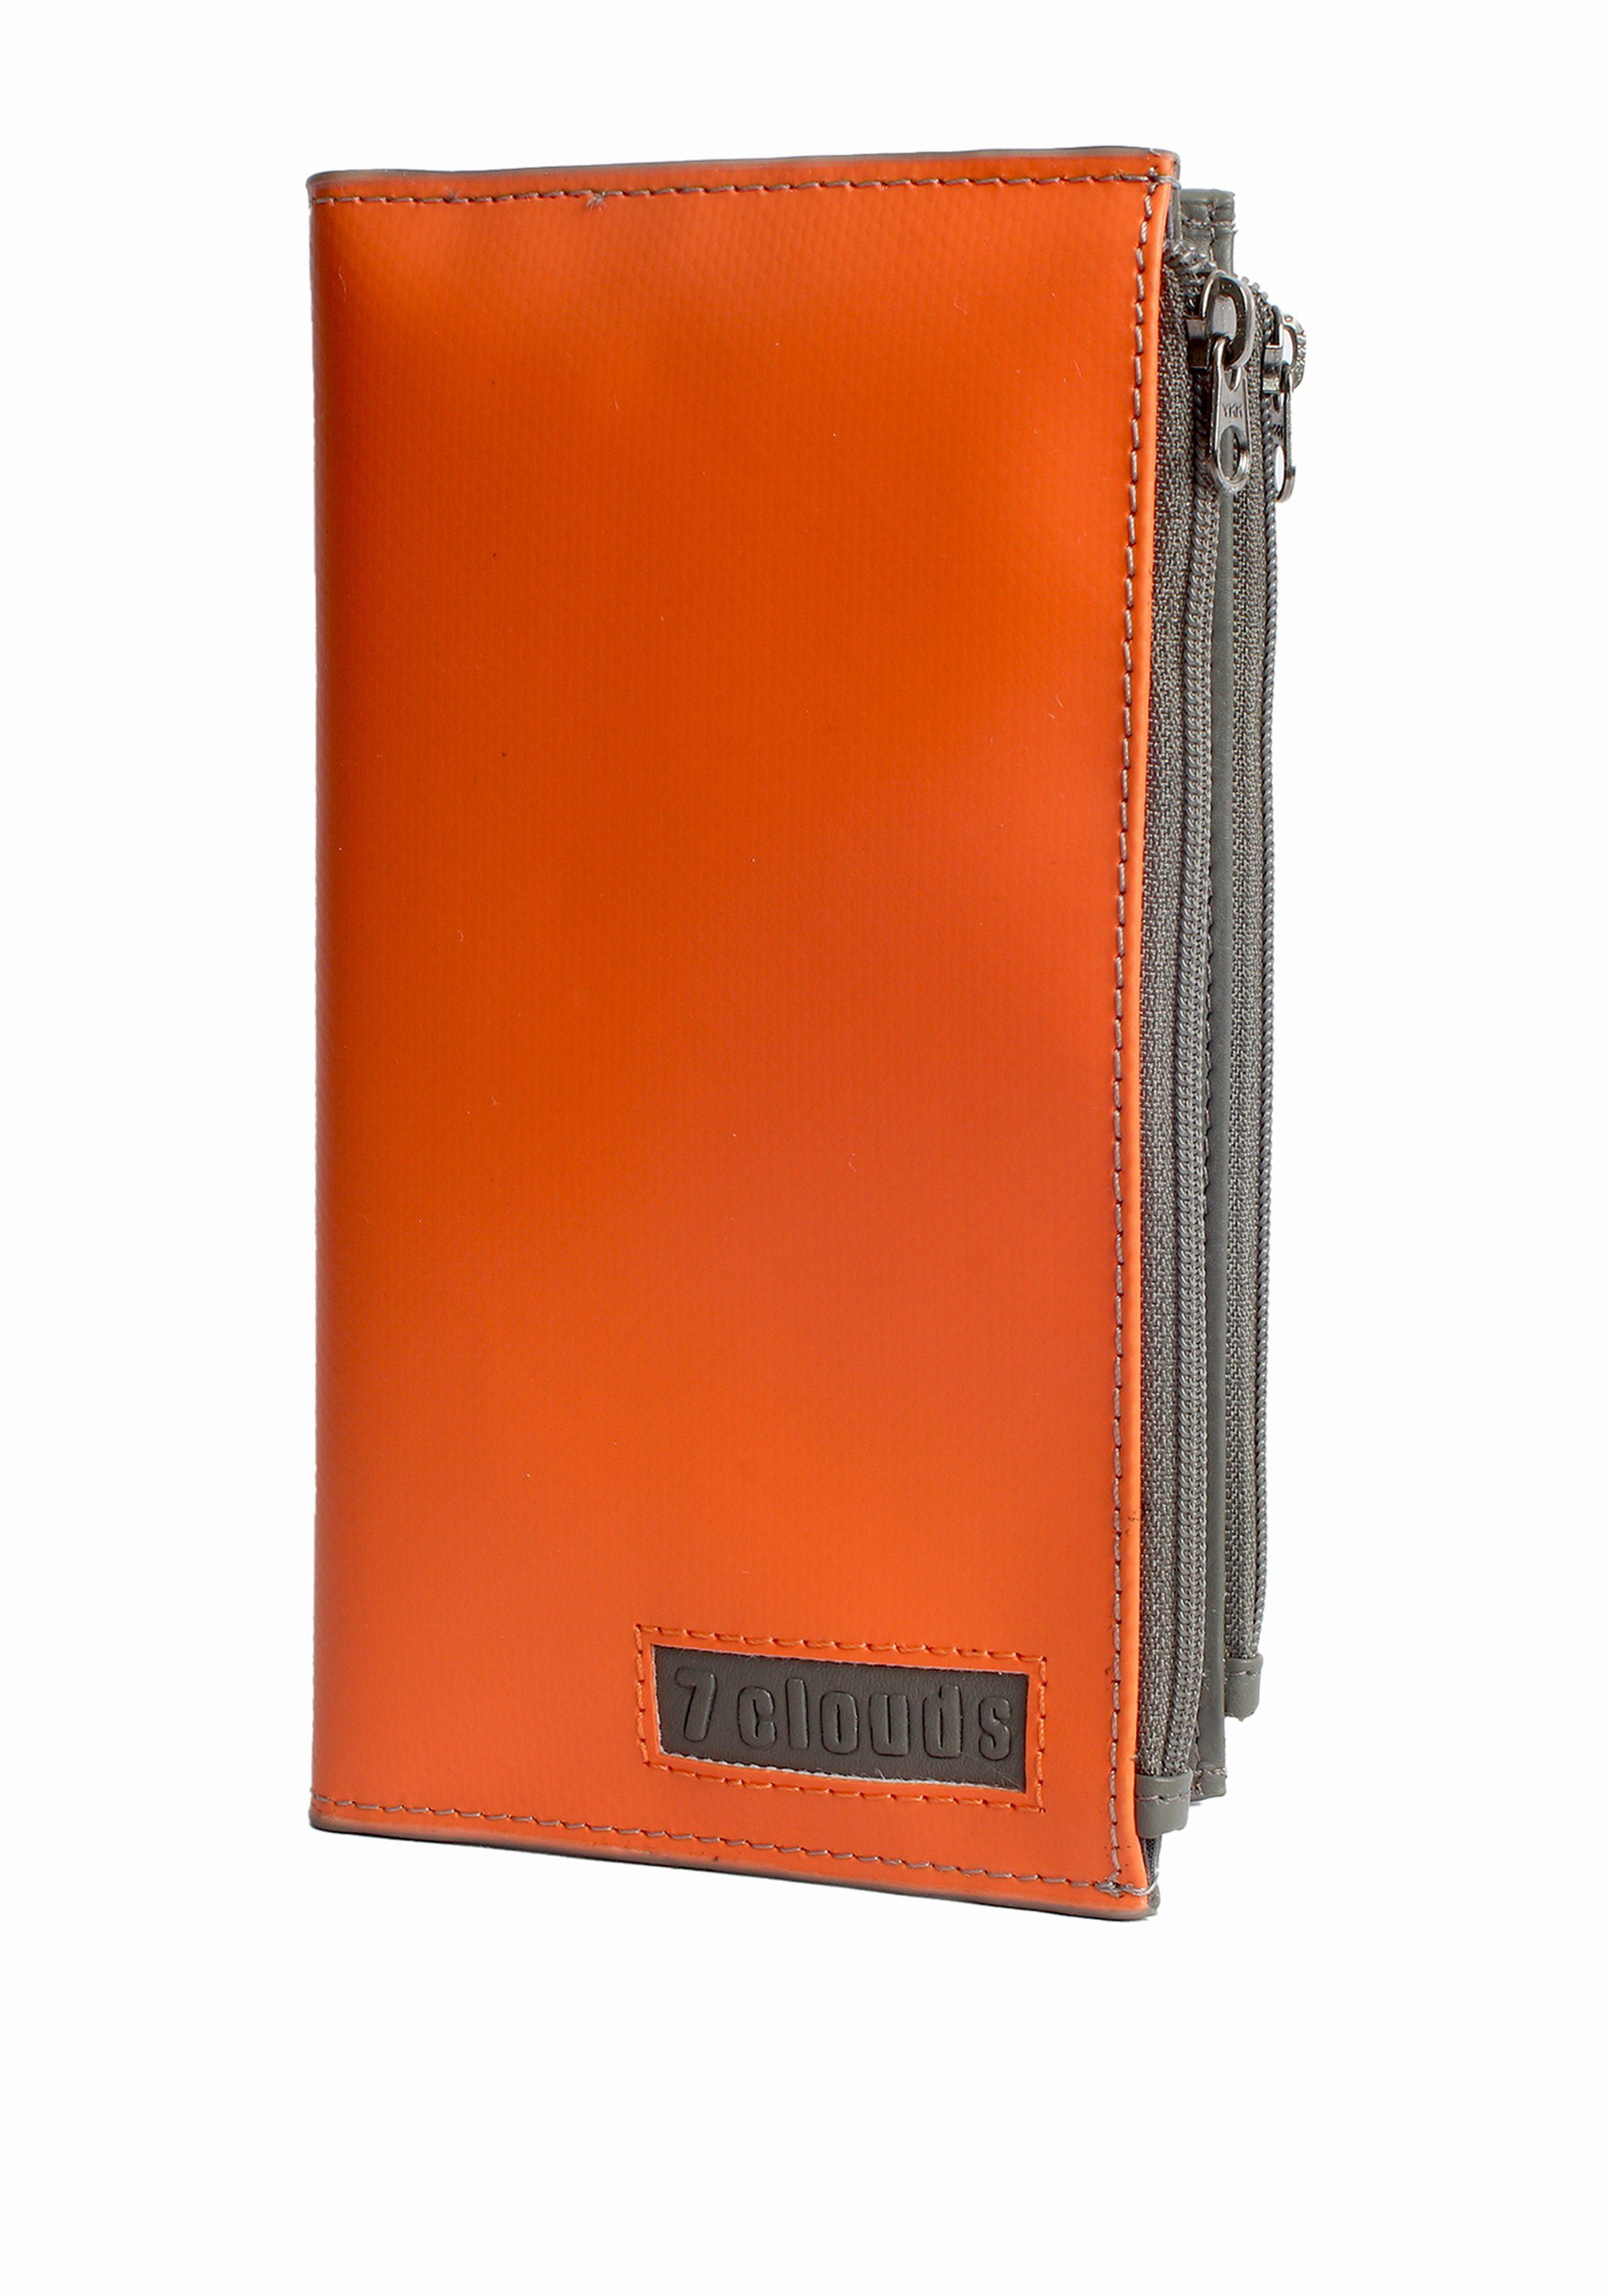 7.1, fairer Geldbörse 7clouds (amfori Segan aus Artikel Produktion BSCI) orange